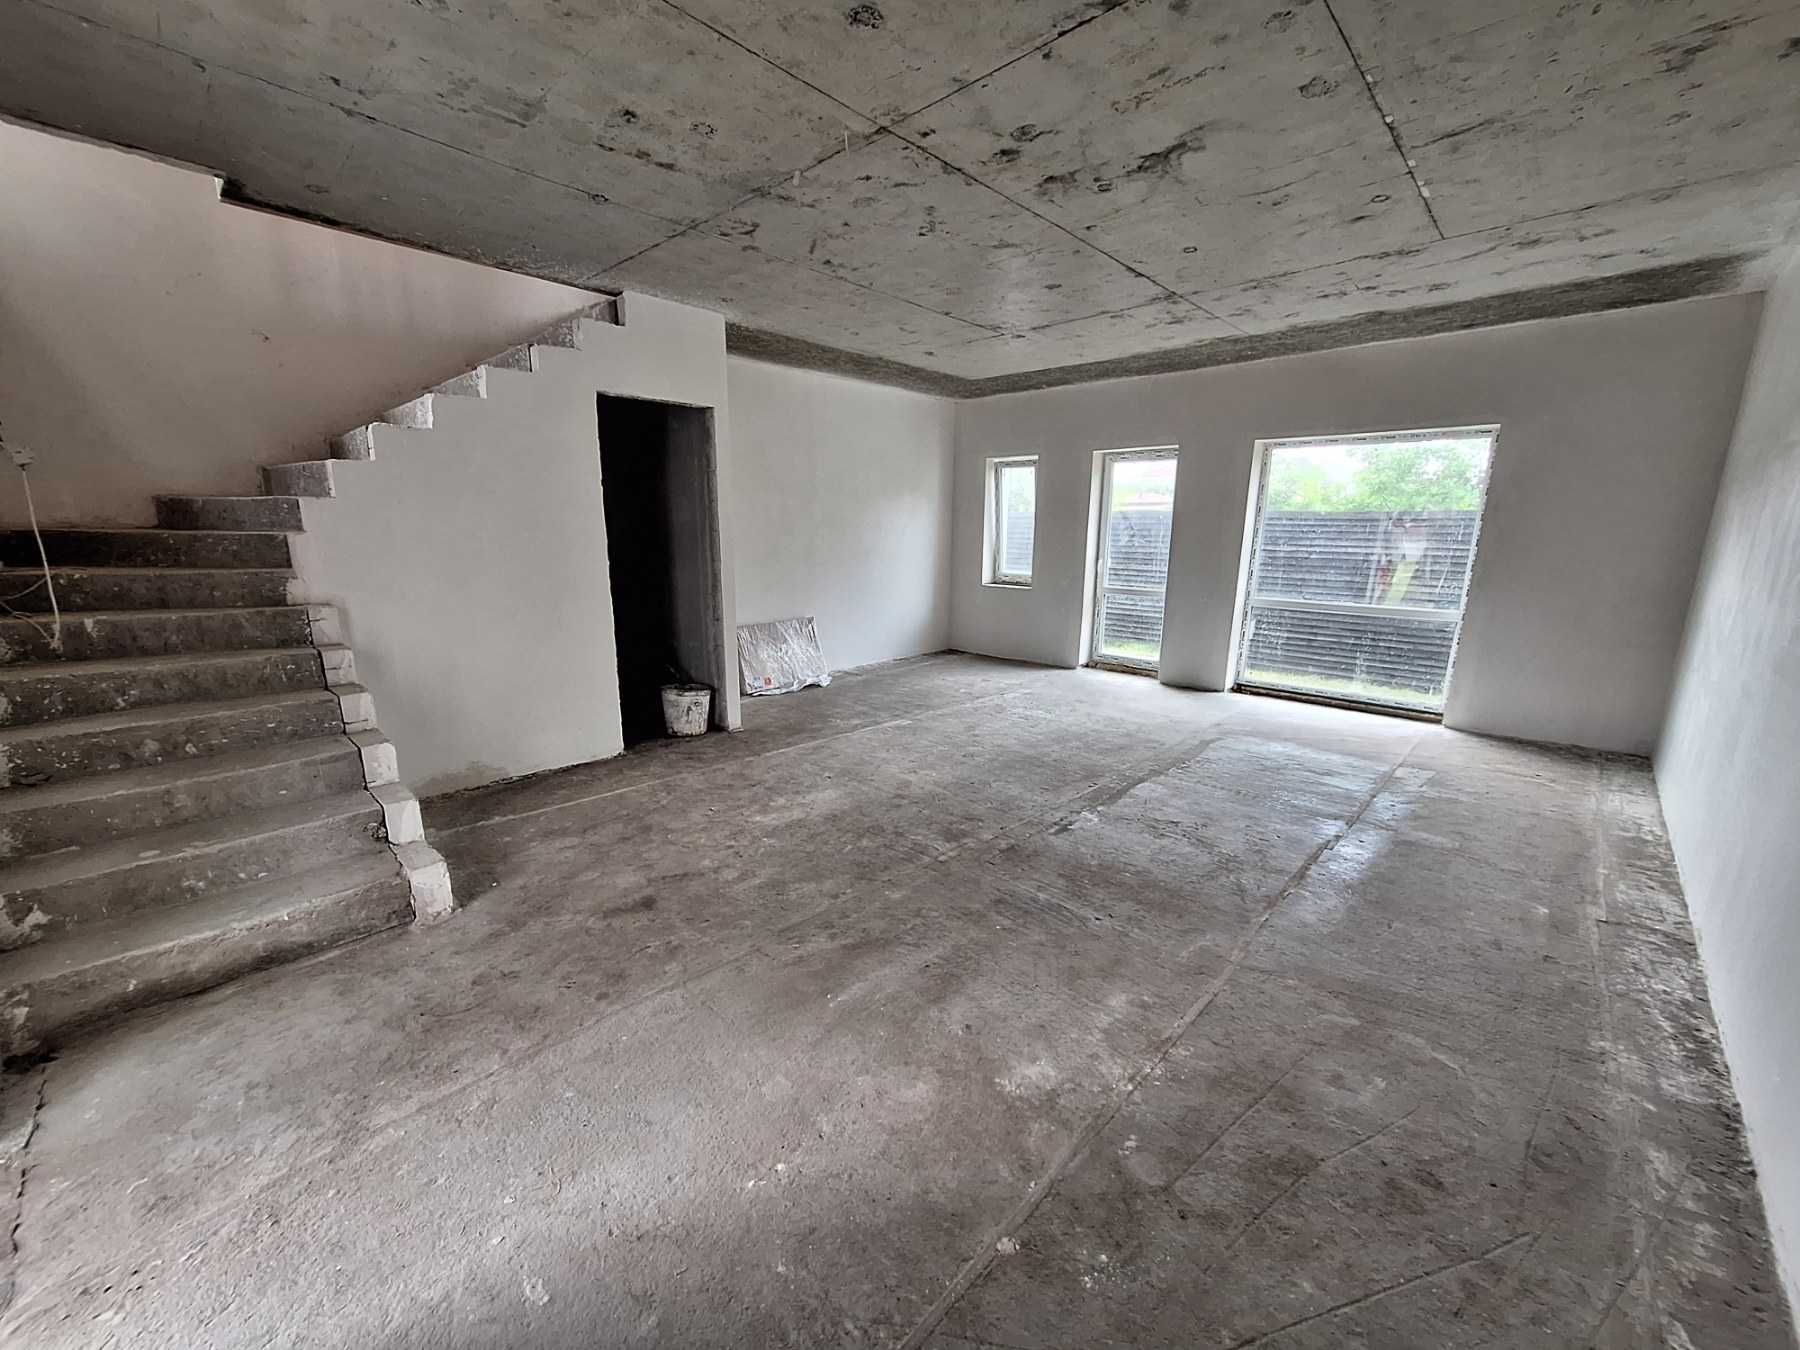 Продам будинок-таунхаус 110м2 в Боярці, ВЛАСНИК, ціна під ключ